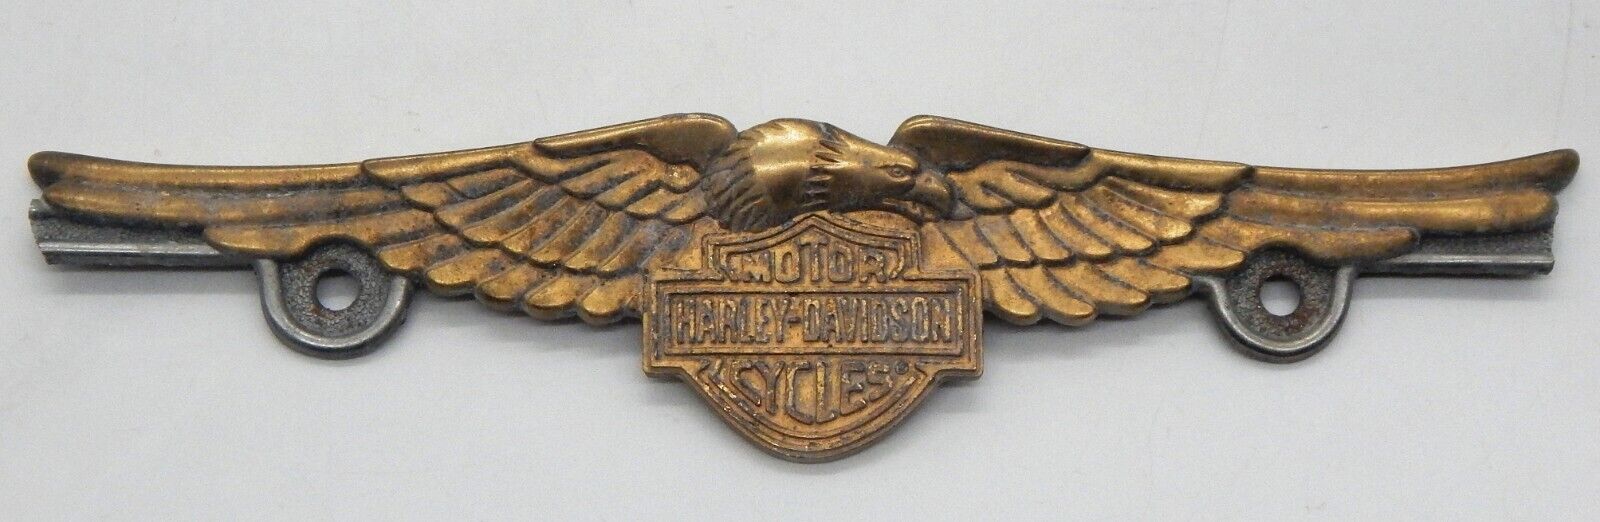 Harley Davidson Gold Plated Metal Vintage 11.5